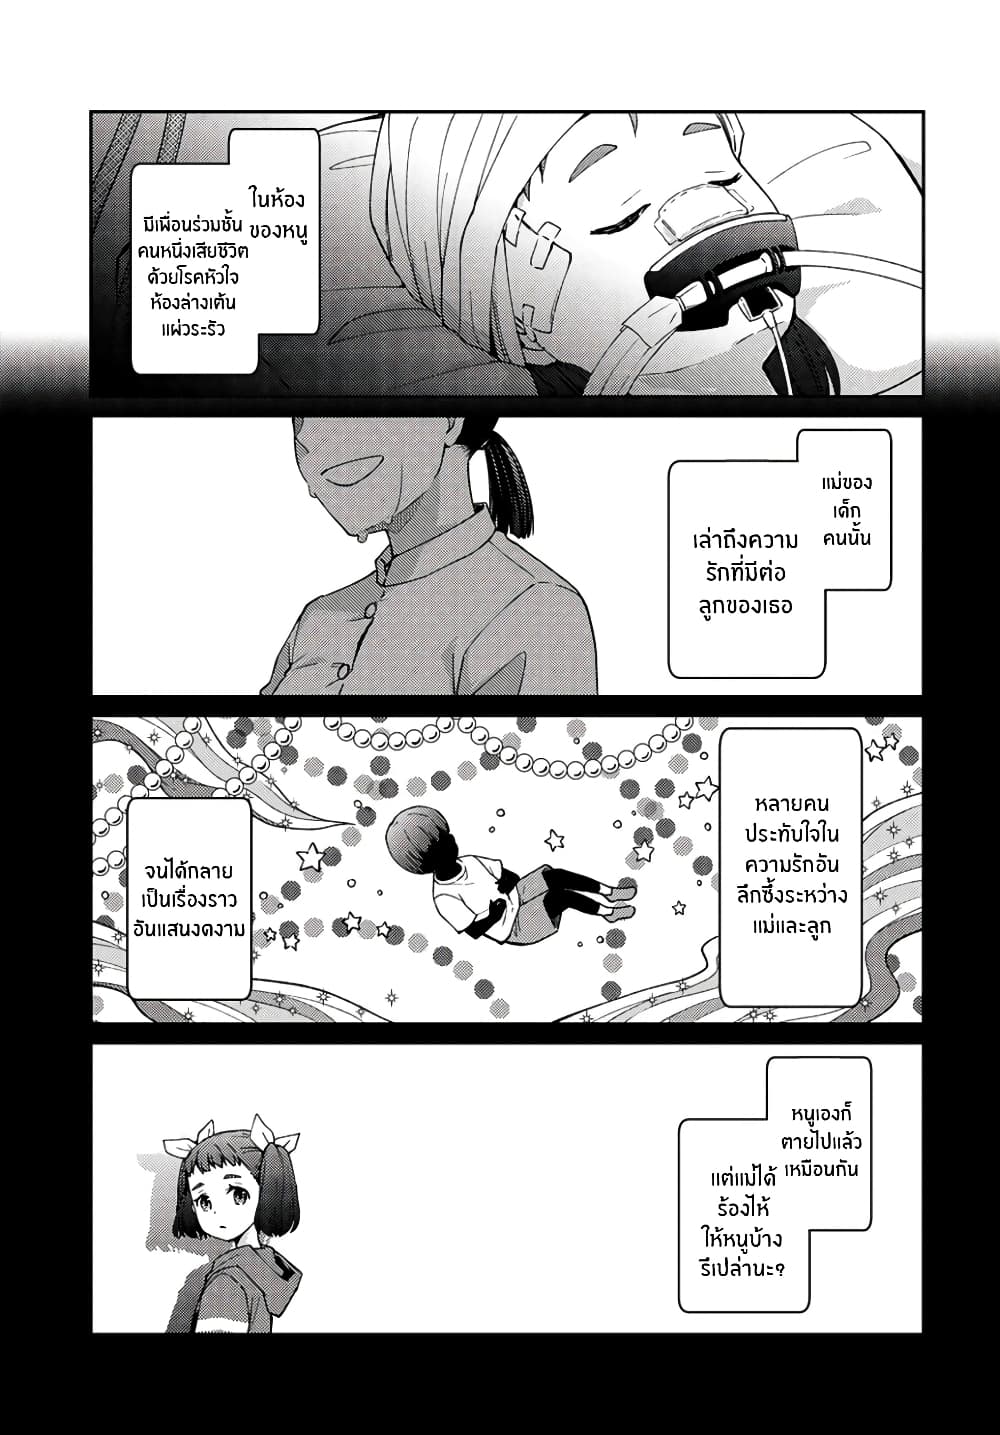 Jikyuu Sanbyaku En no Shinigami 8 (19)